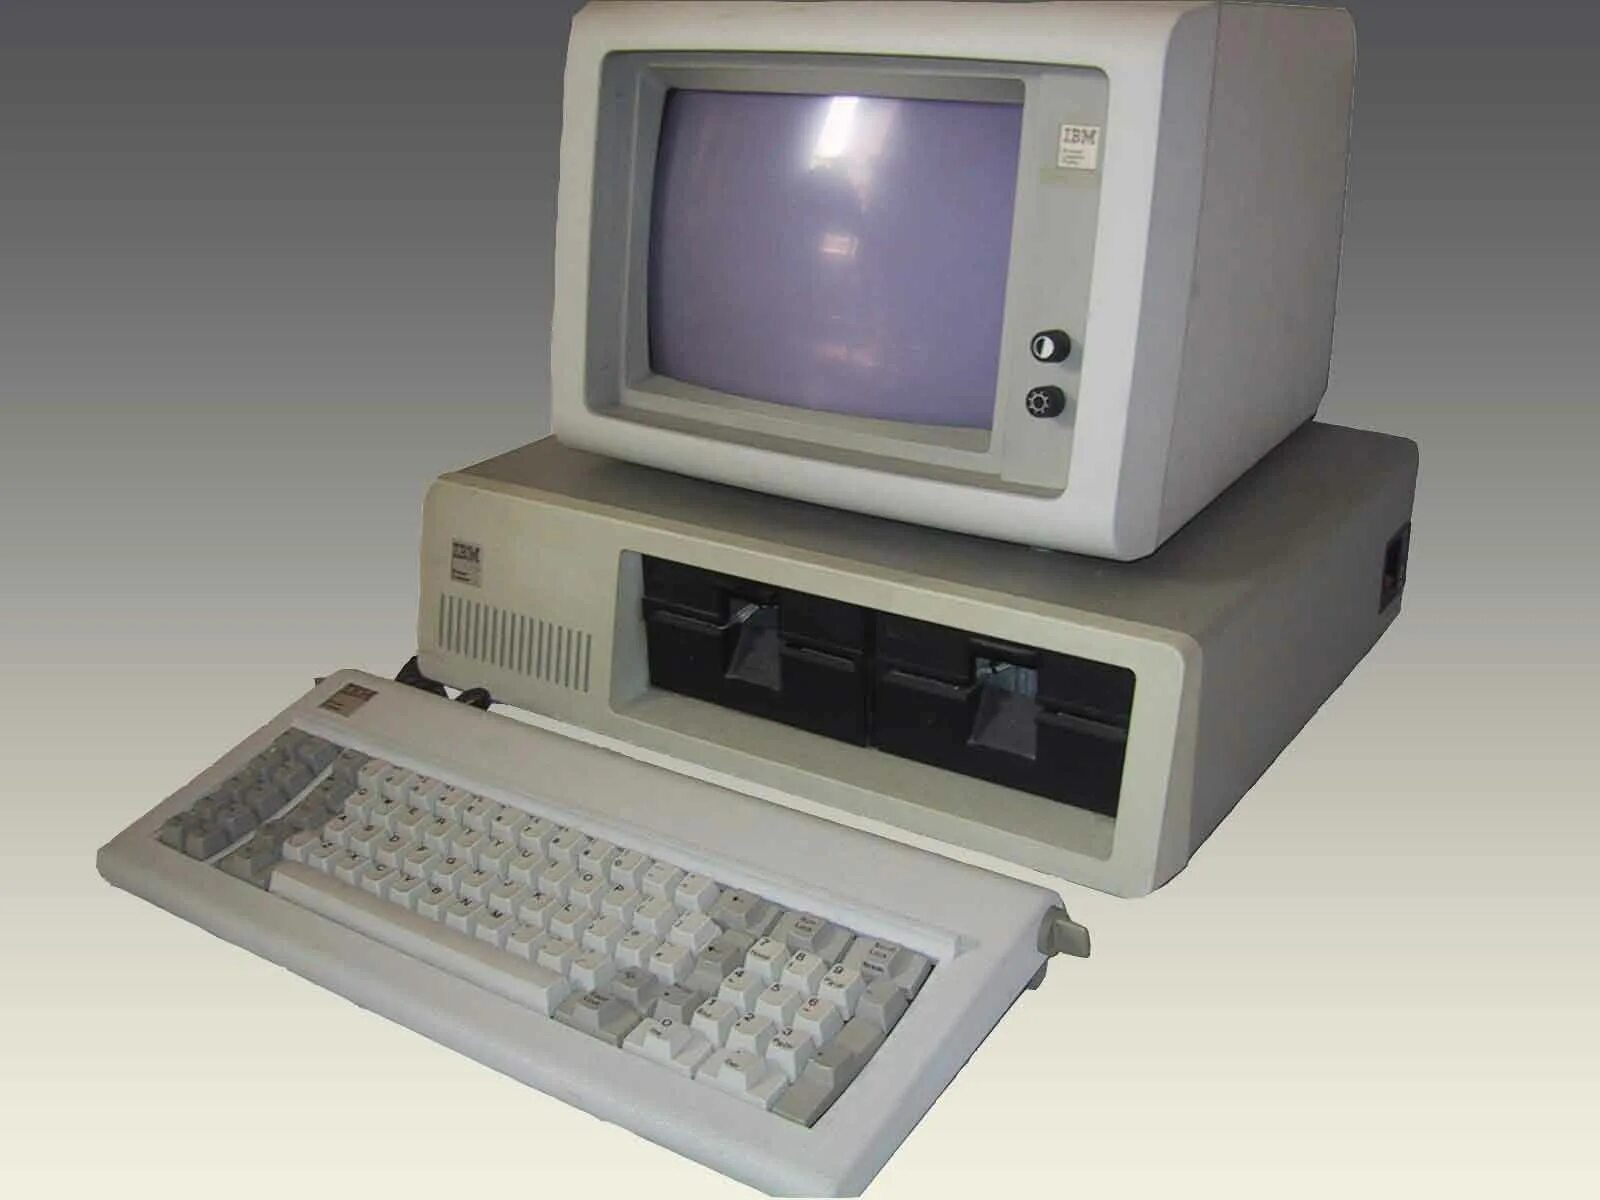 1 личный компьютер. Компьютер IBM PC 5150. IBM PC model 5150. 1981 IBM 5150. IBM компьютер 1981.